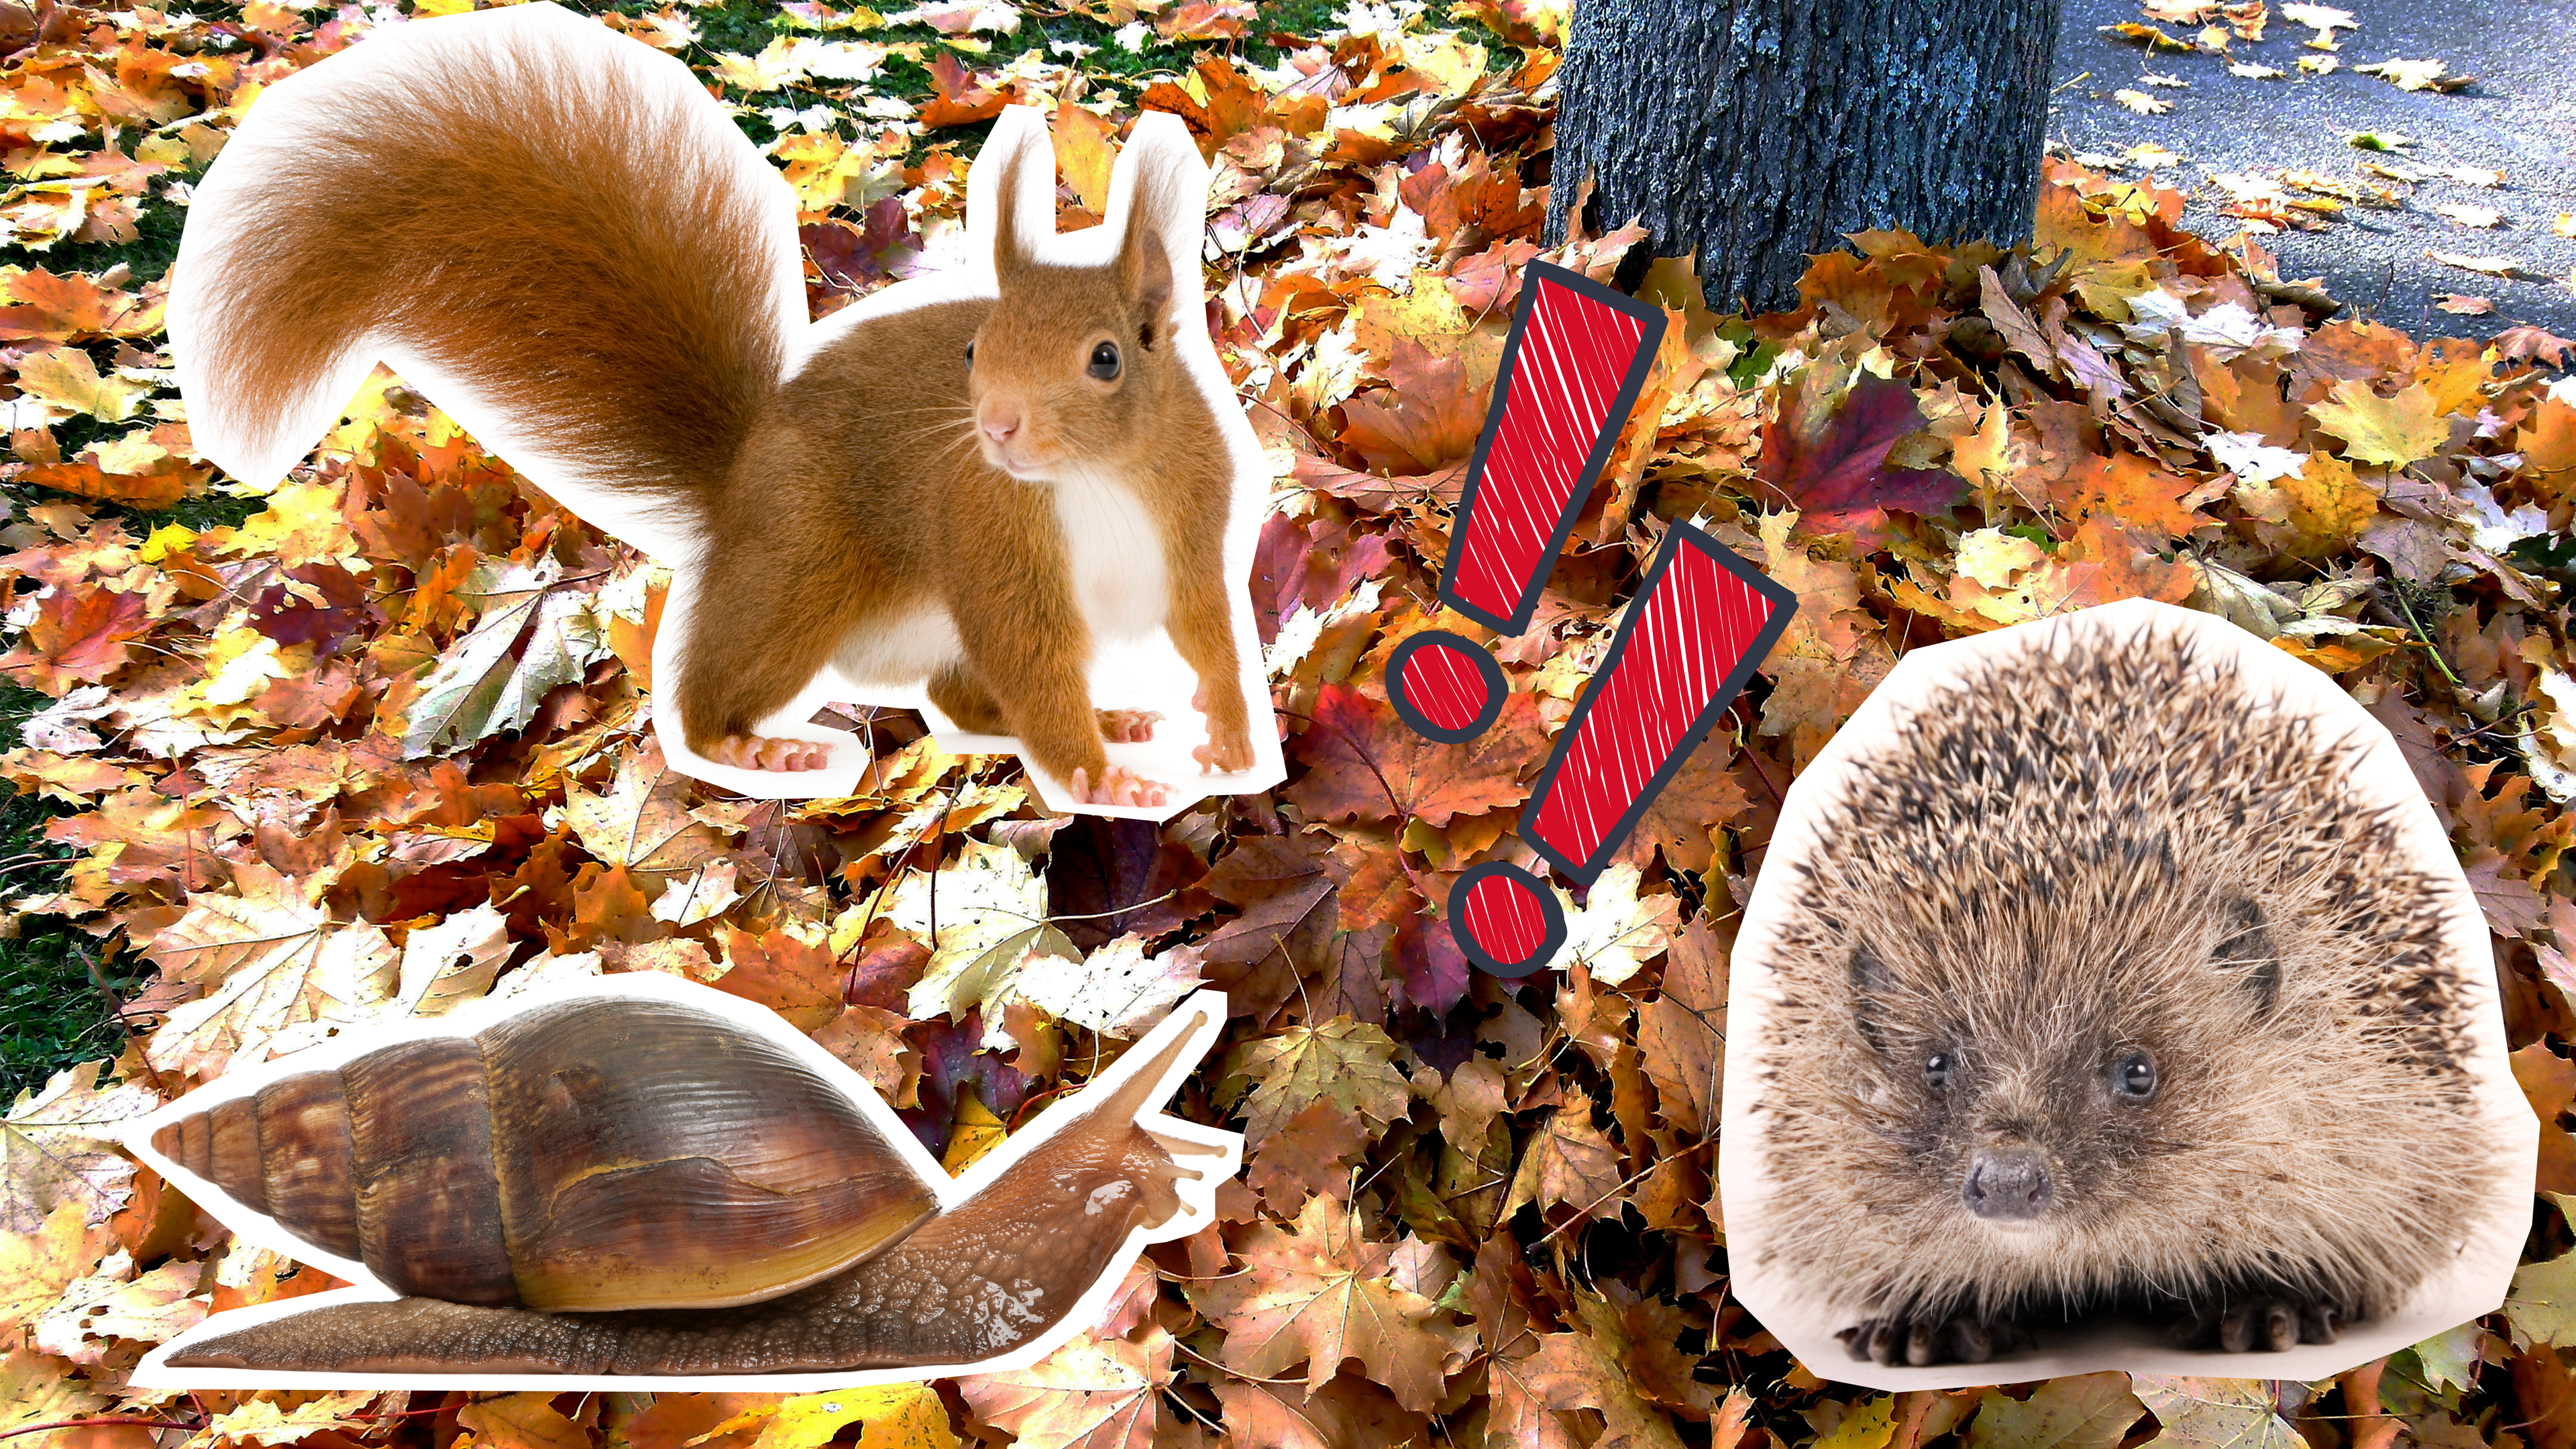 Laubhaufen mit Eichhörnchen, Schnecke und Igel